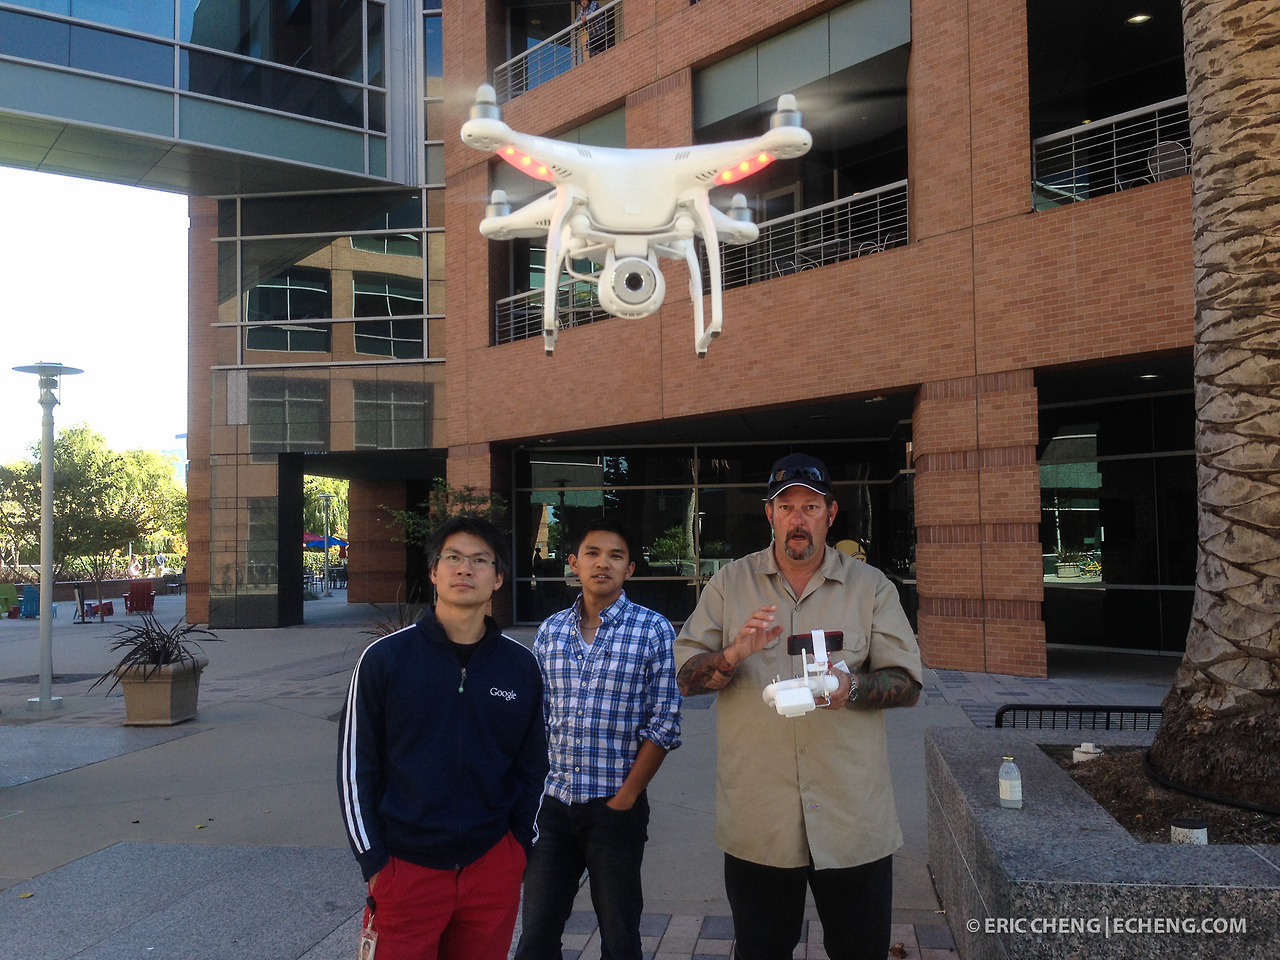 Barry flies the DJI Phantom Vision at Google HQ